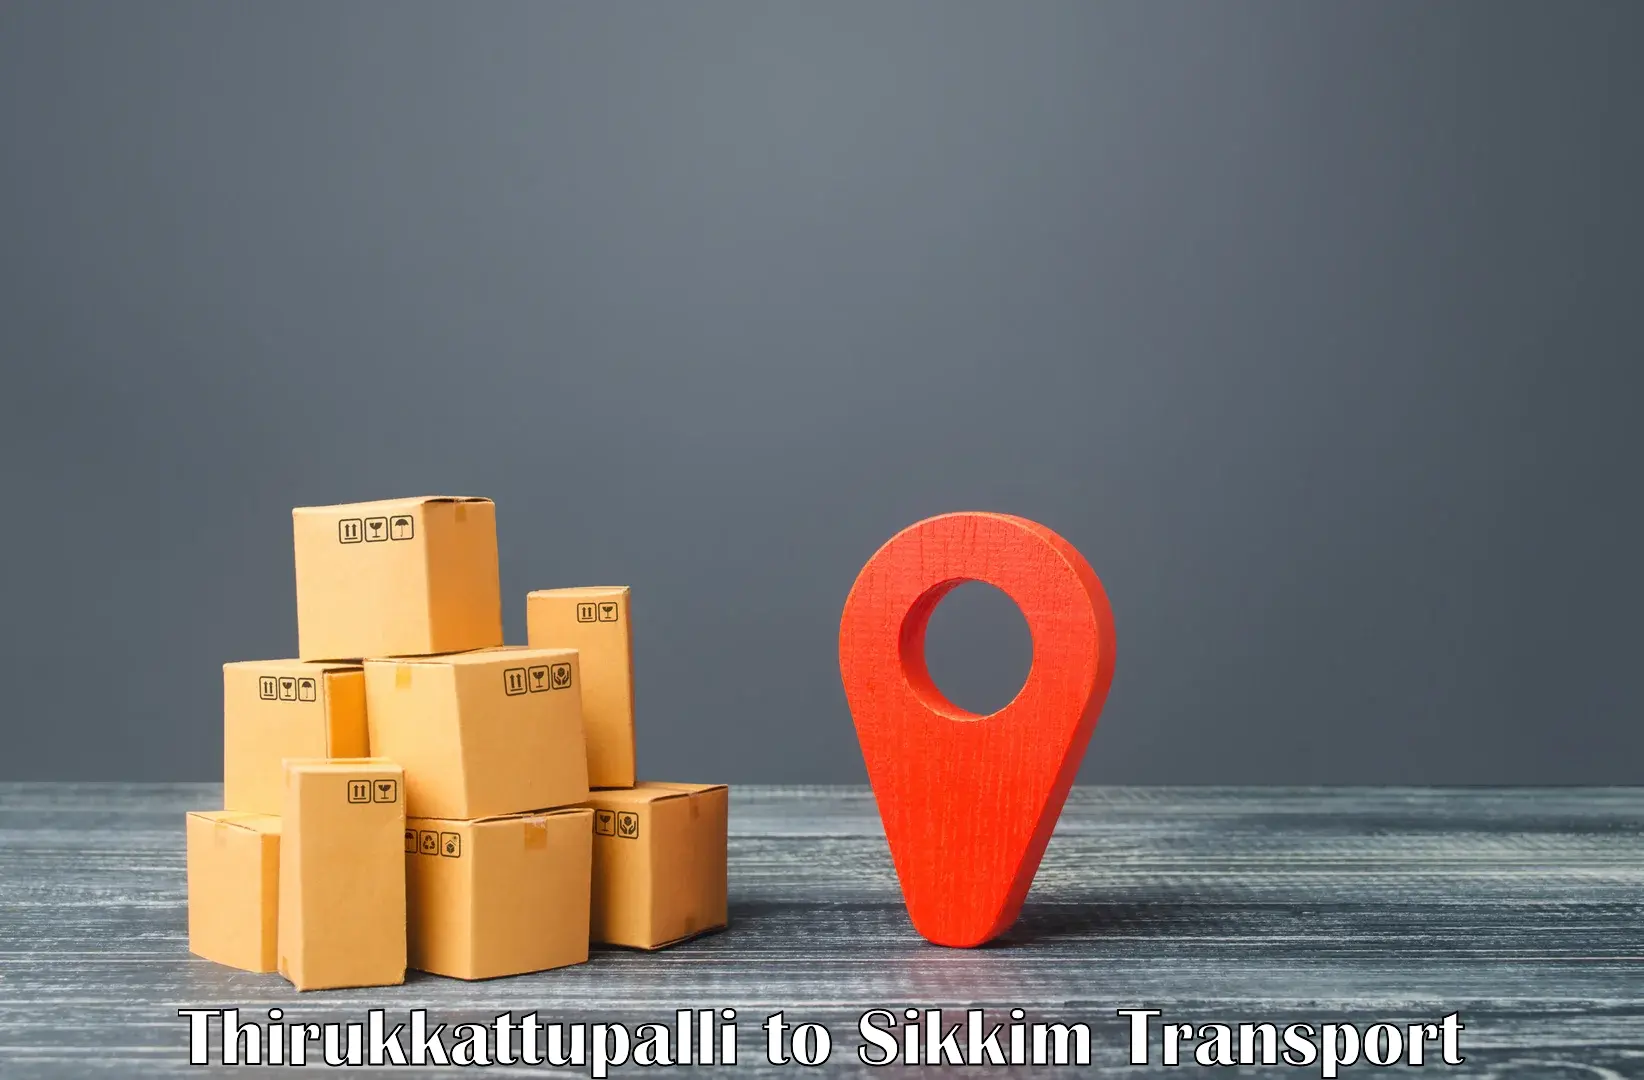 Bike transfer in Thirukkattupalli to East Sikkim